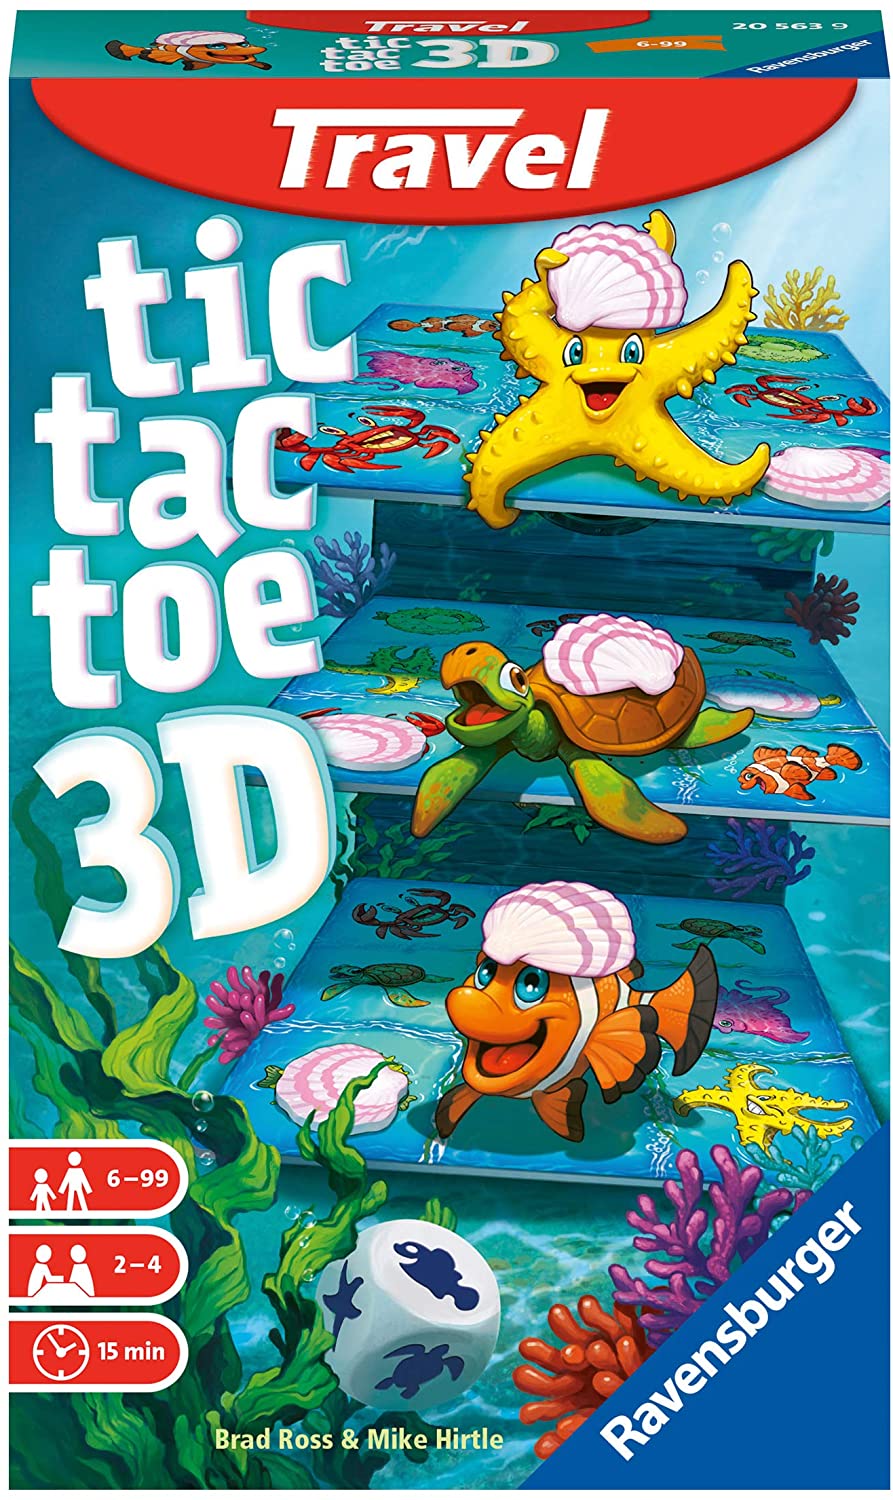 tic-tac-toe-3d